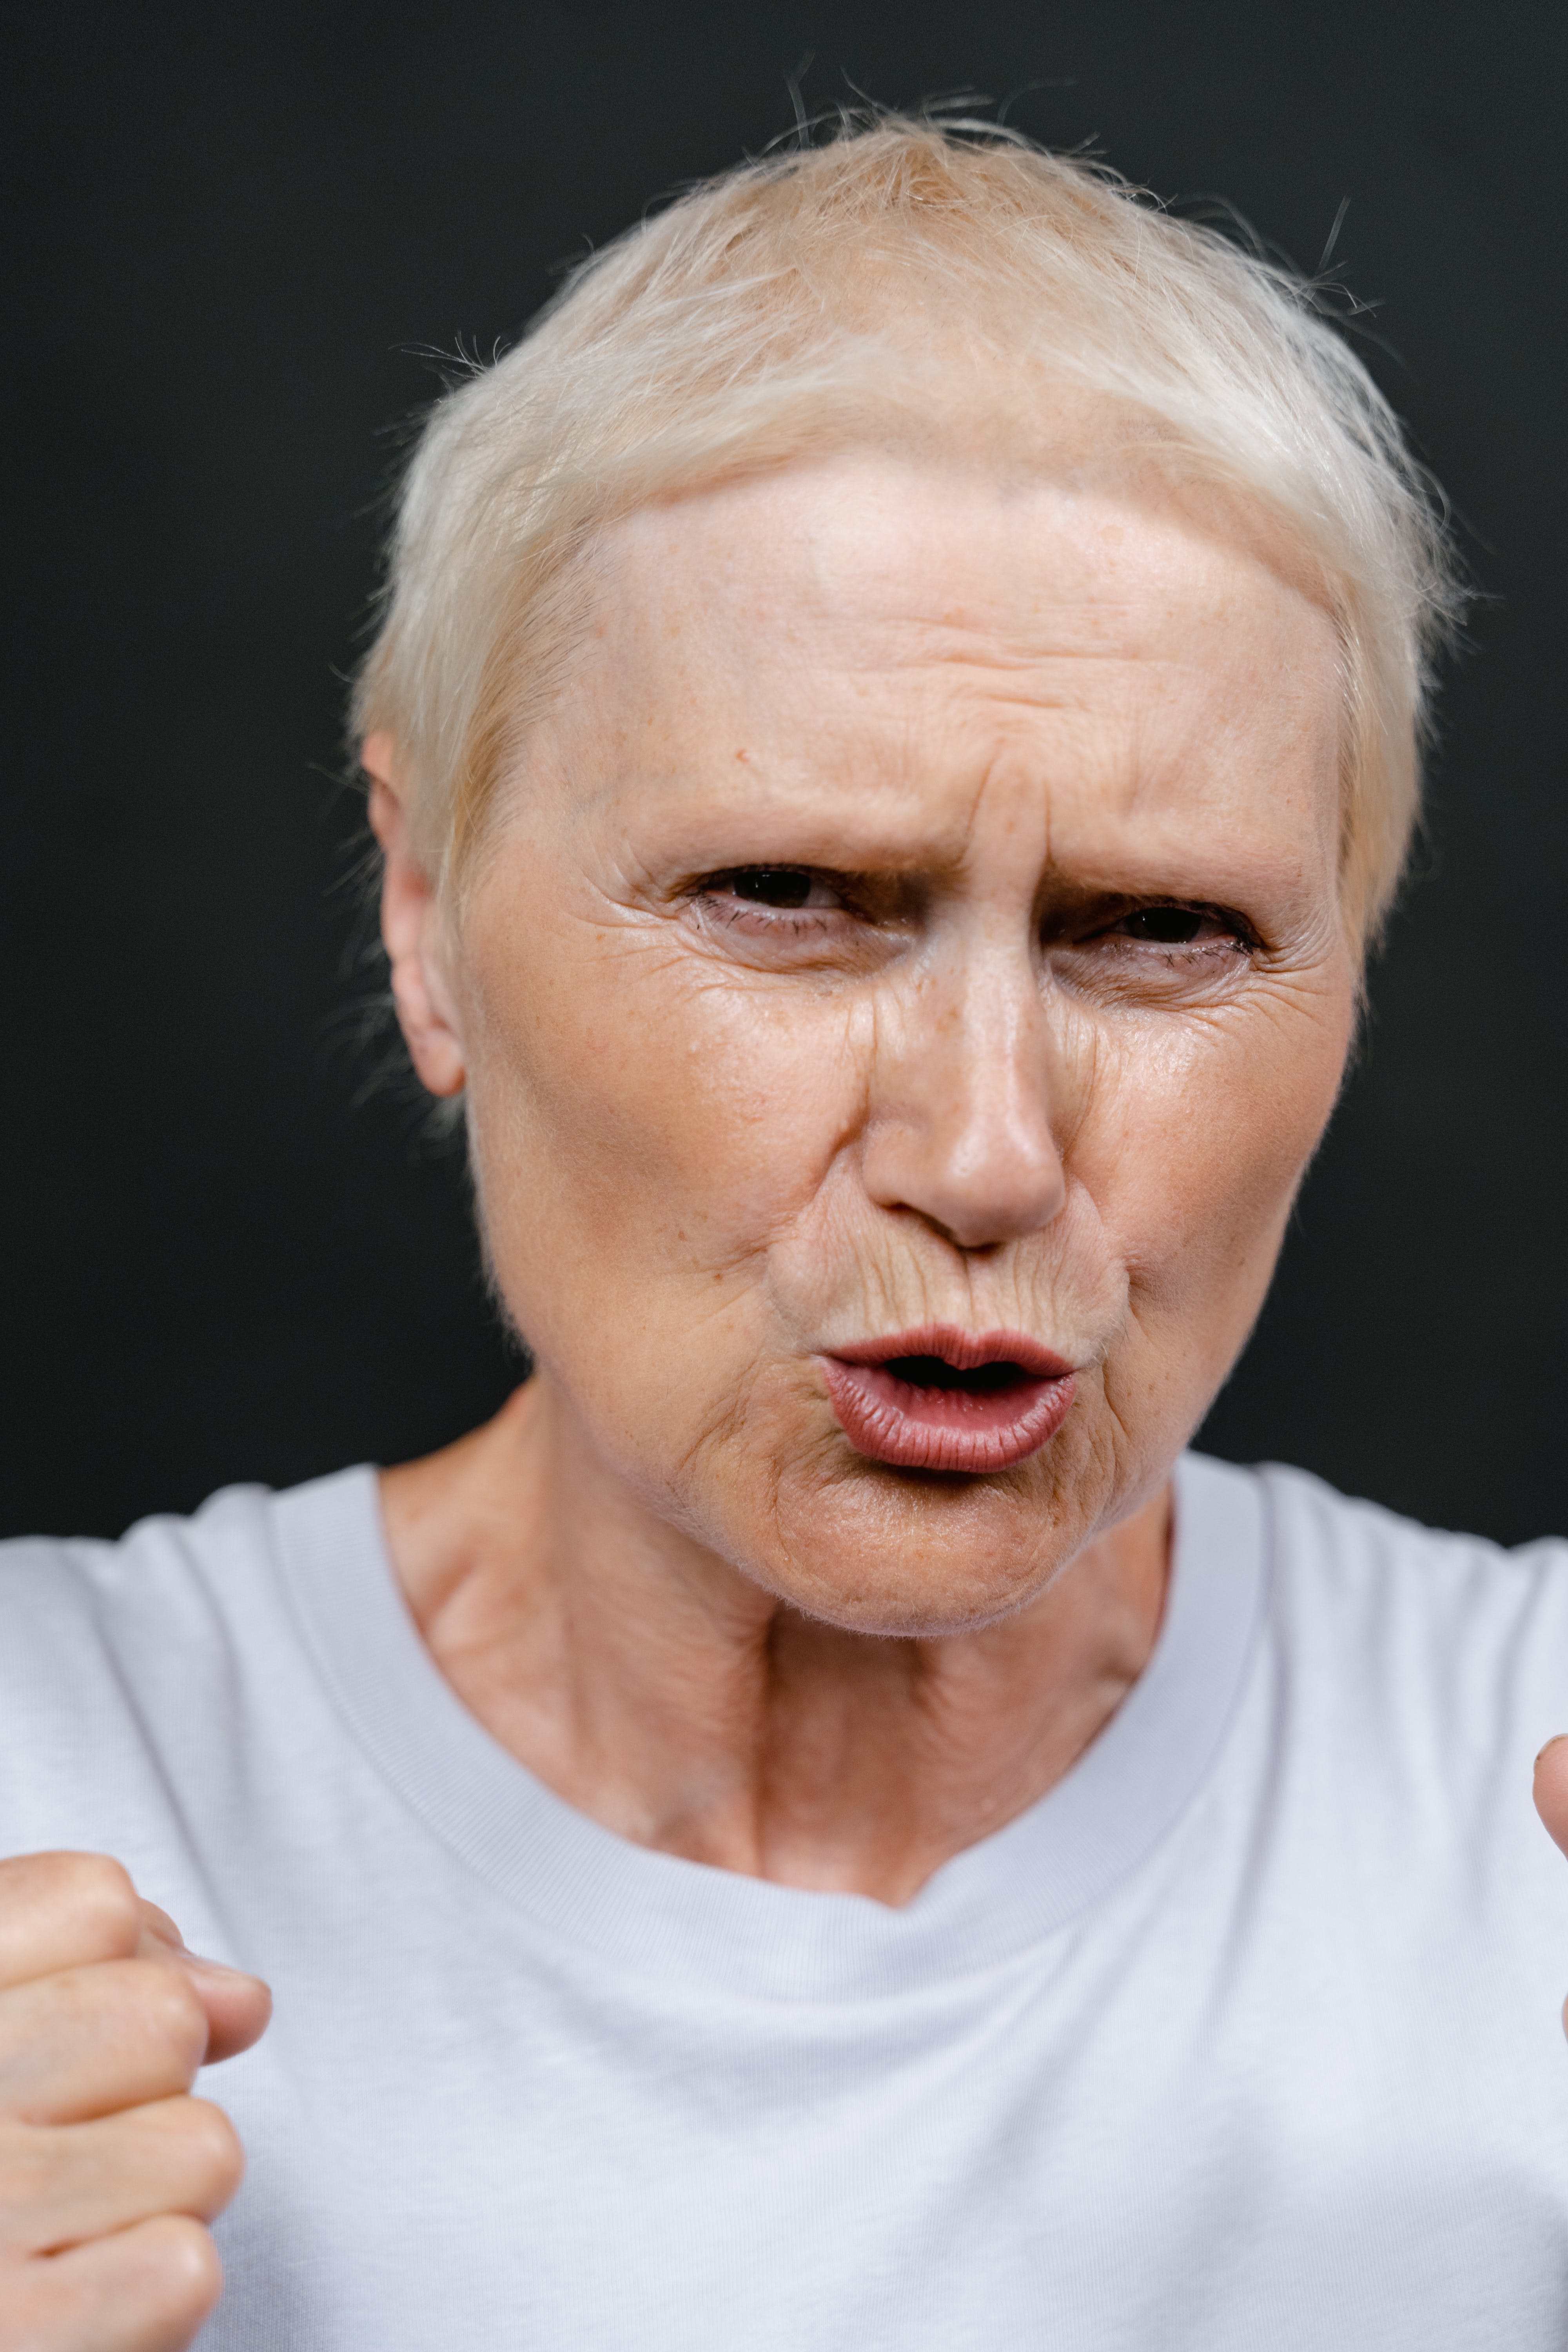 Une femme âgée à l'air contrarié | Source : Pexels